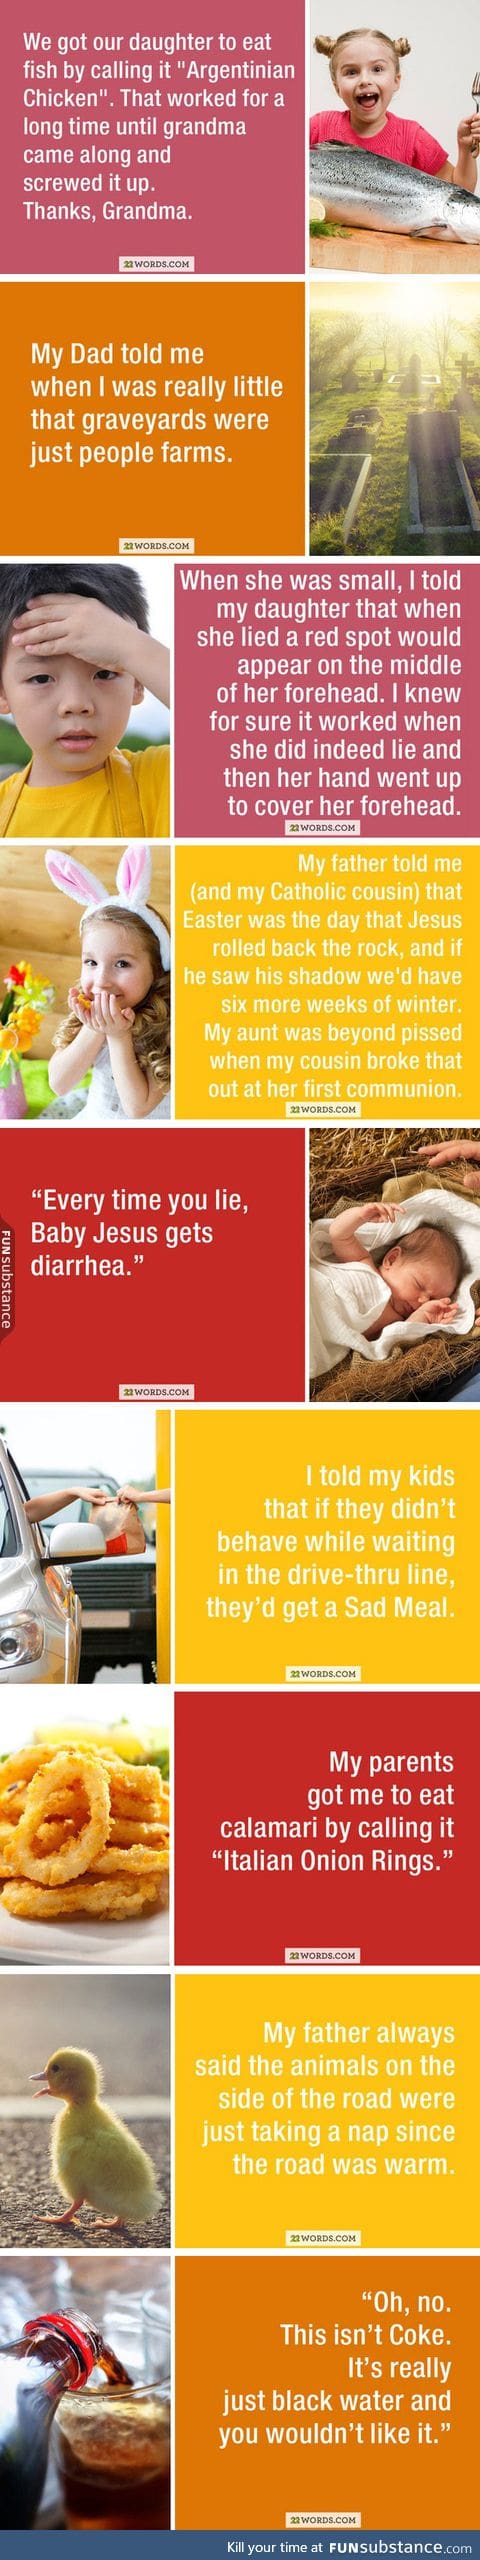 Telling lies to kids